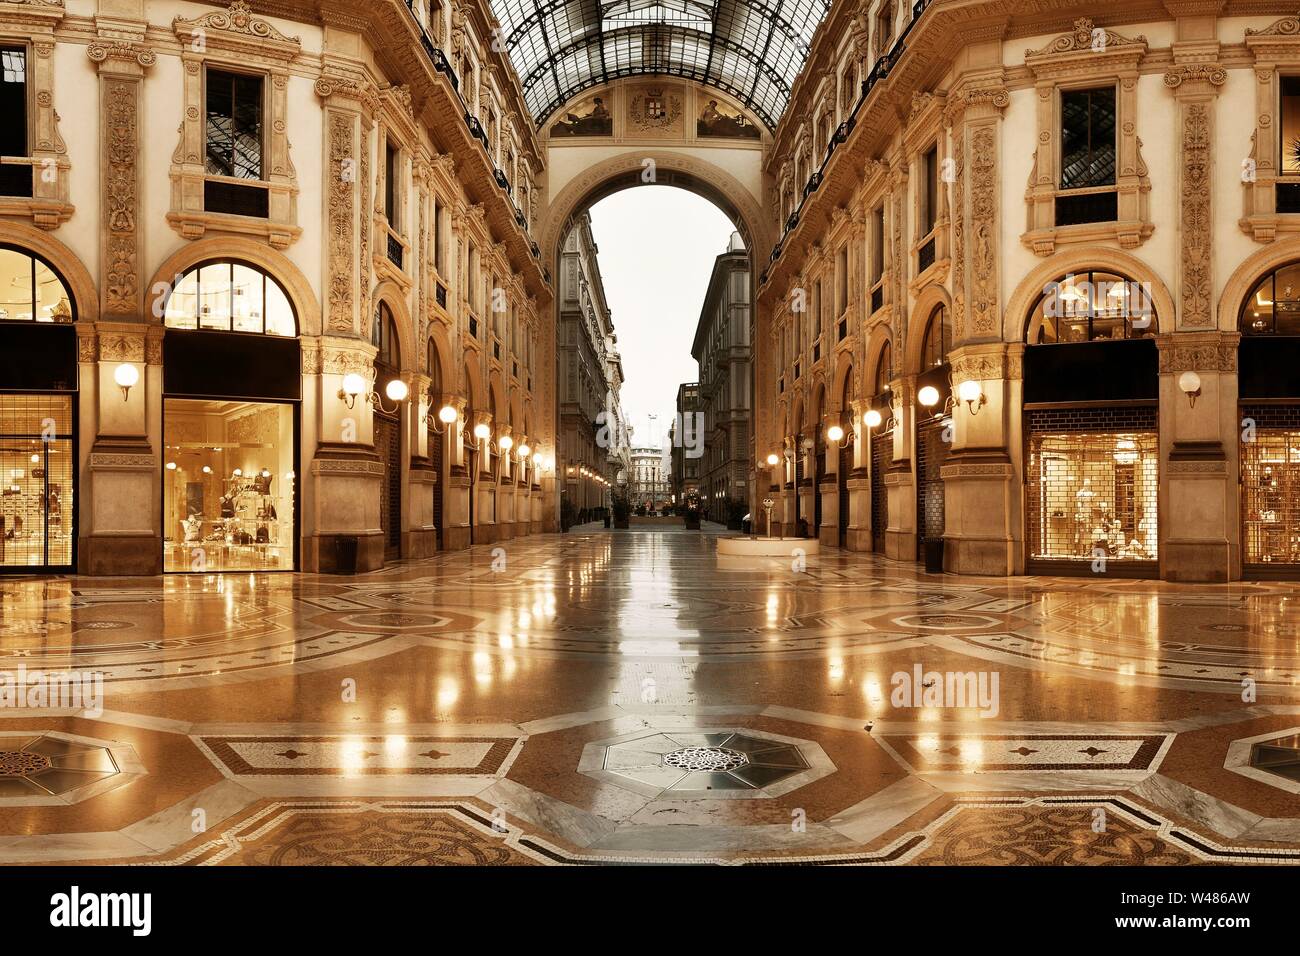 Italy, Milan, Interior of Galleria Vittorio Emanuele II during